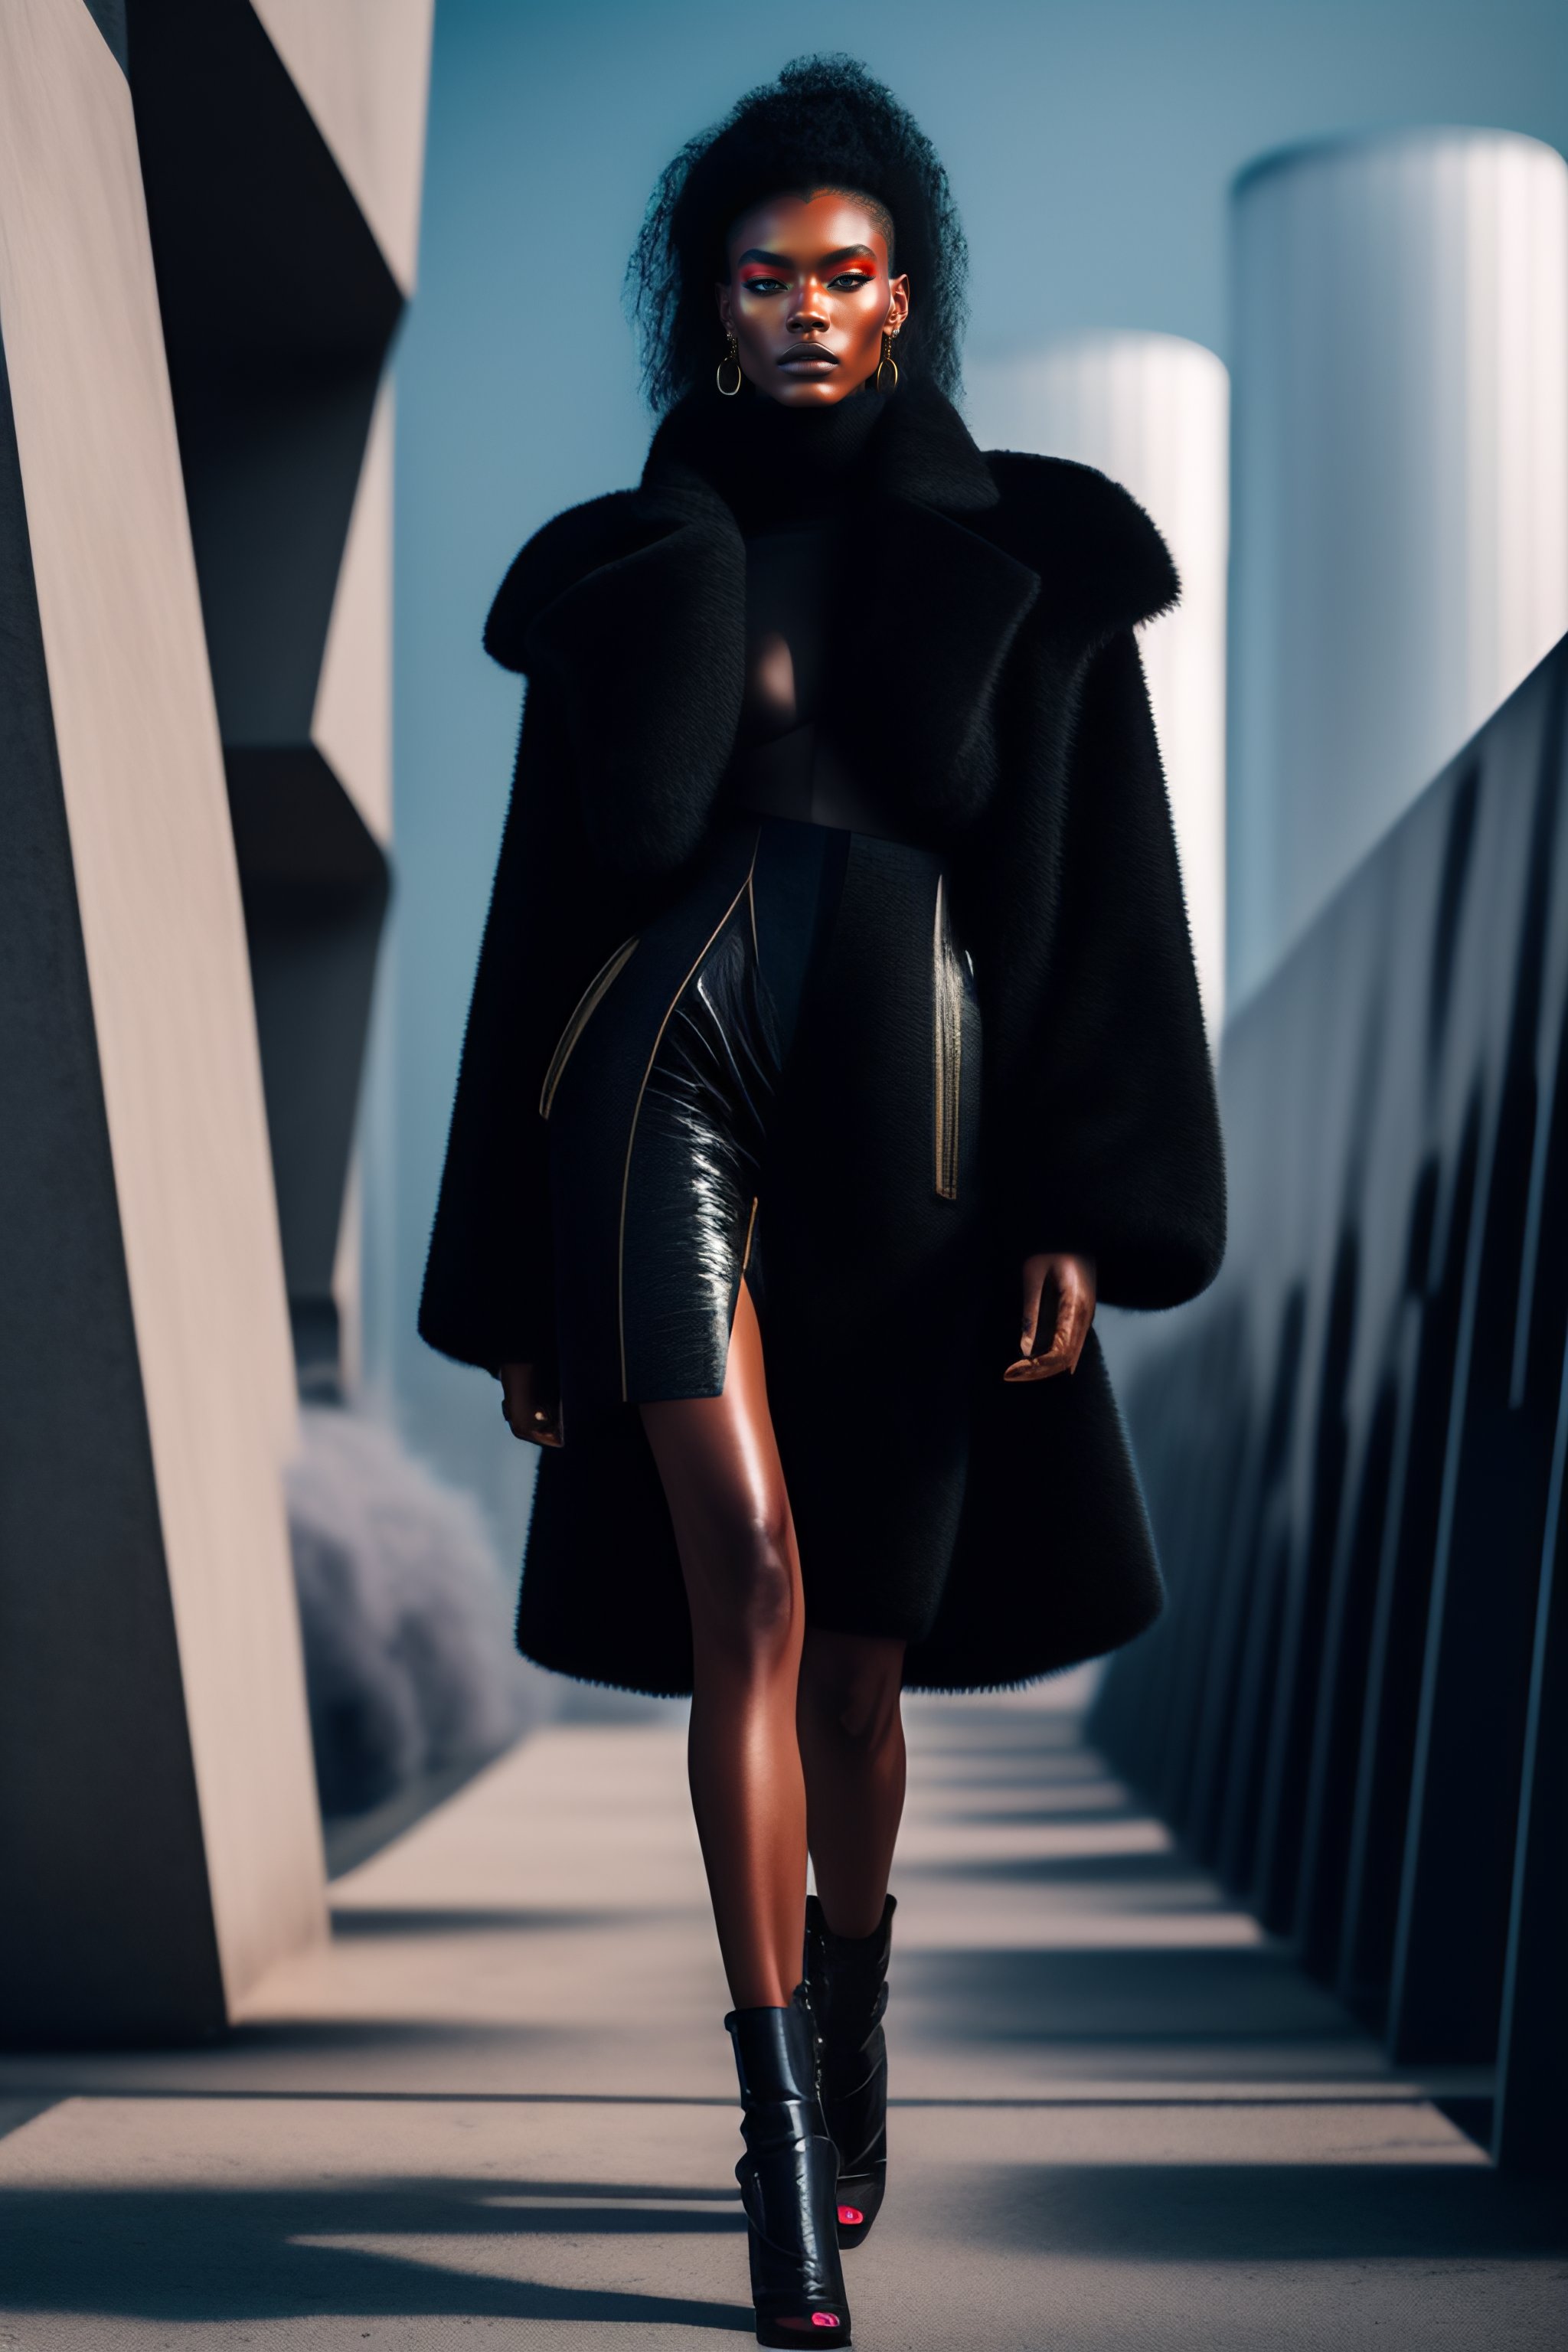 Lexica - cyberpunk futuristic haute-couture clothes